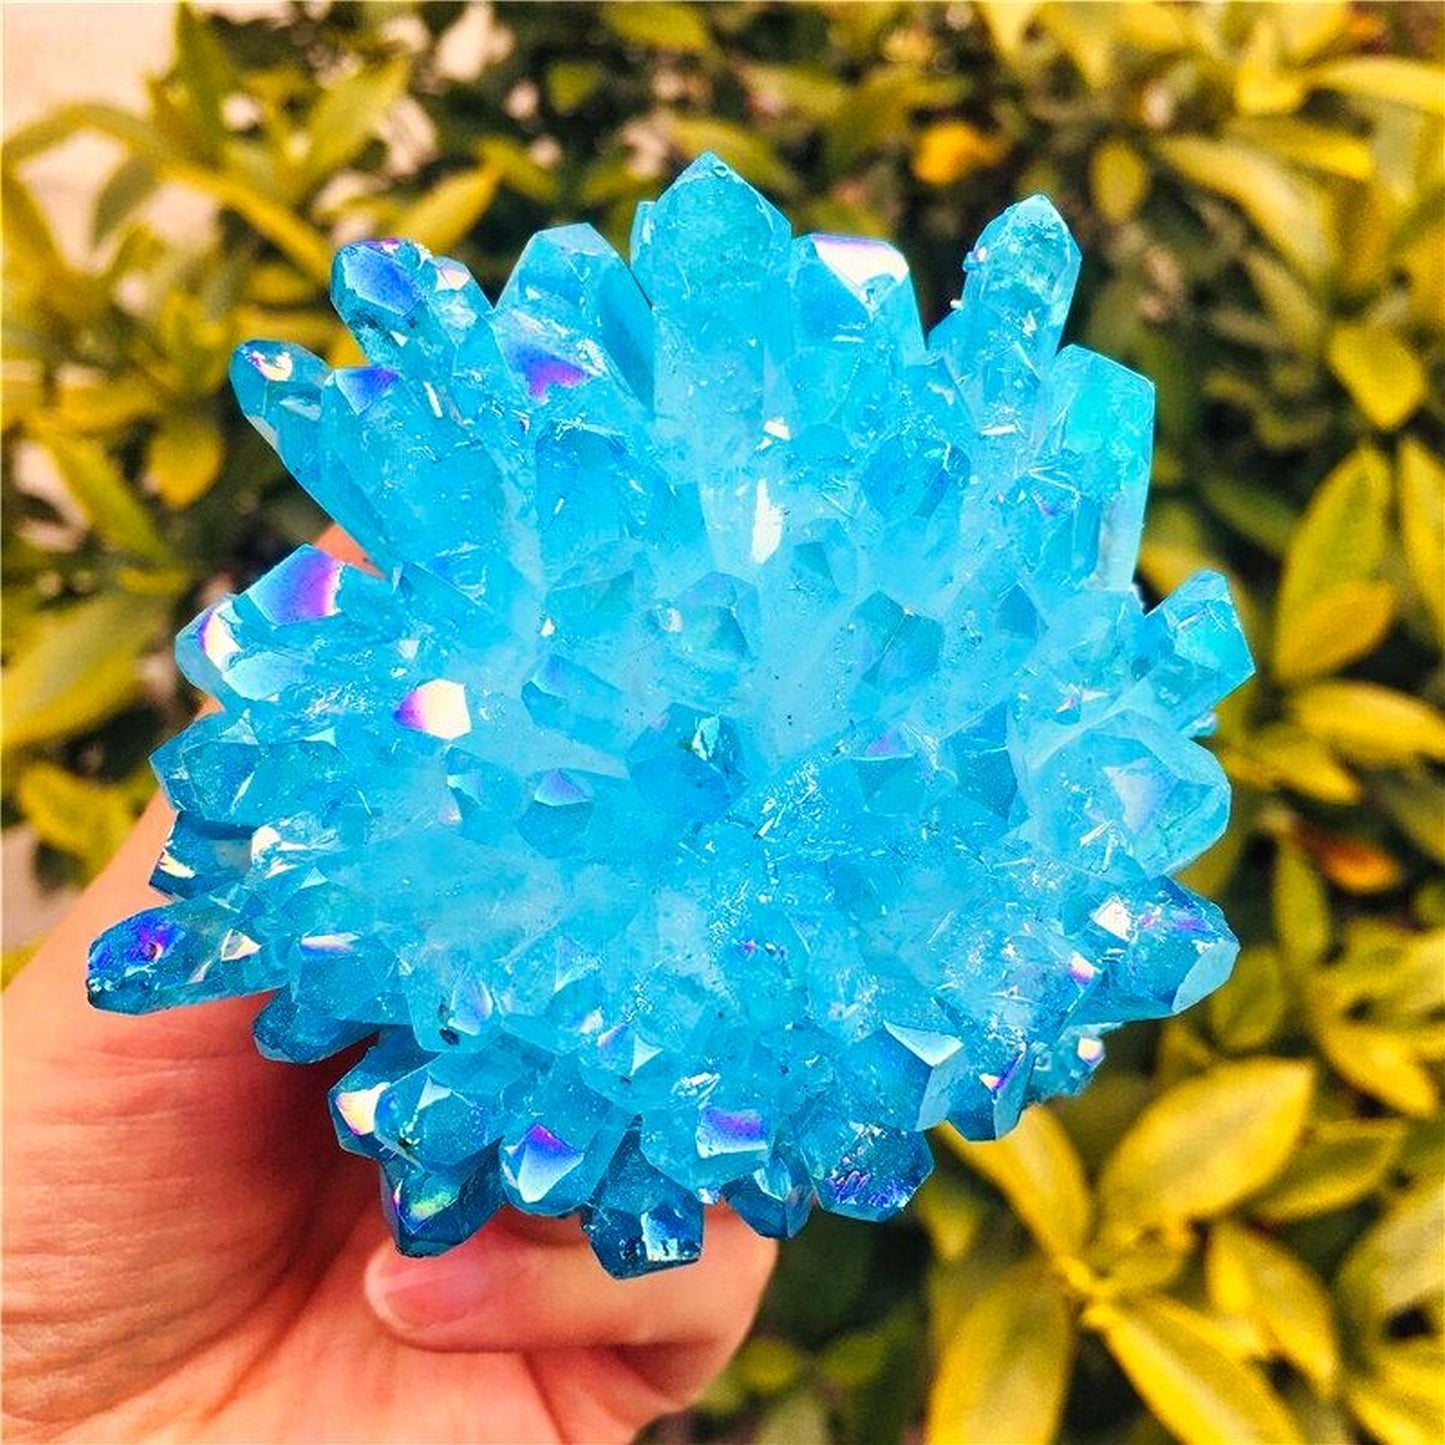 Electroplated Blue Crystal Quartz Cluster Healing Reiki